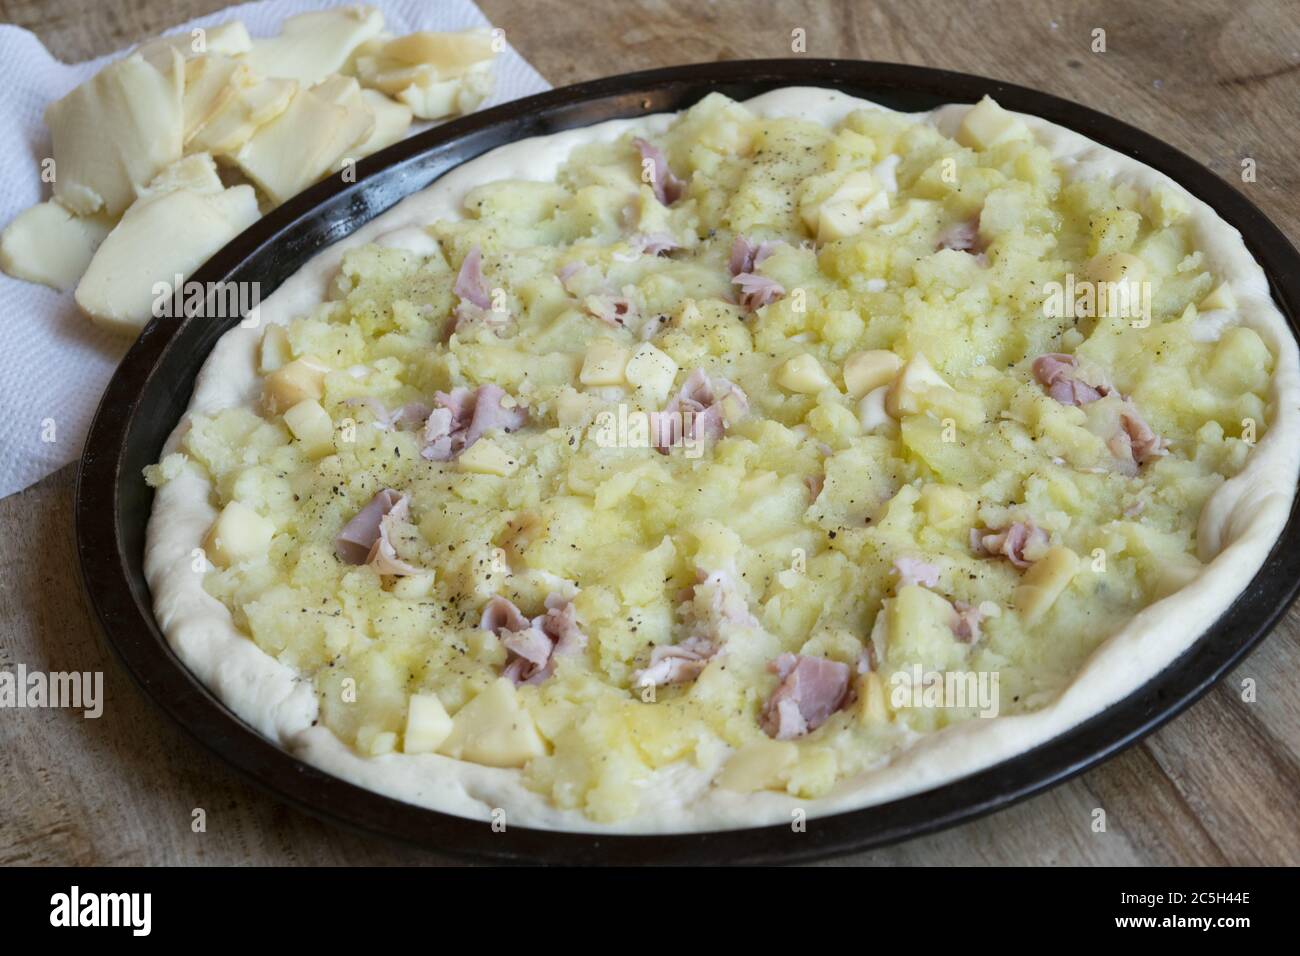 préparation de la pizza avec du jambon cuit et de la purée de pommes de terre Banque D'Images